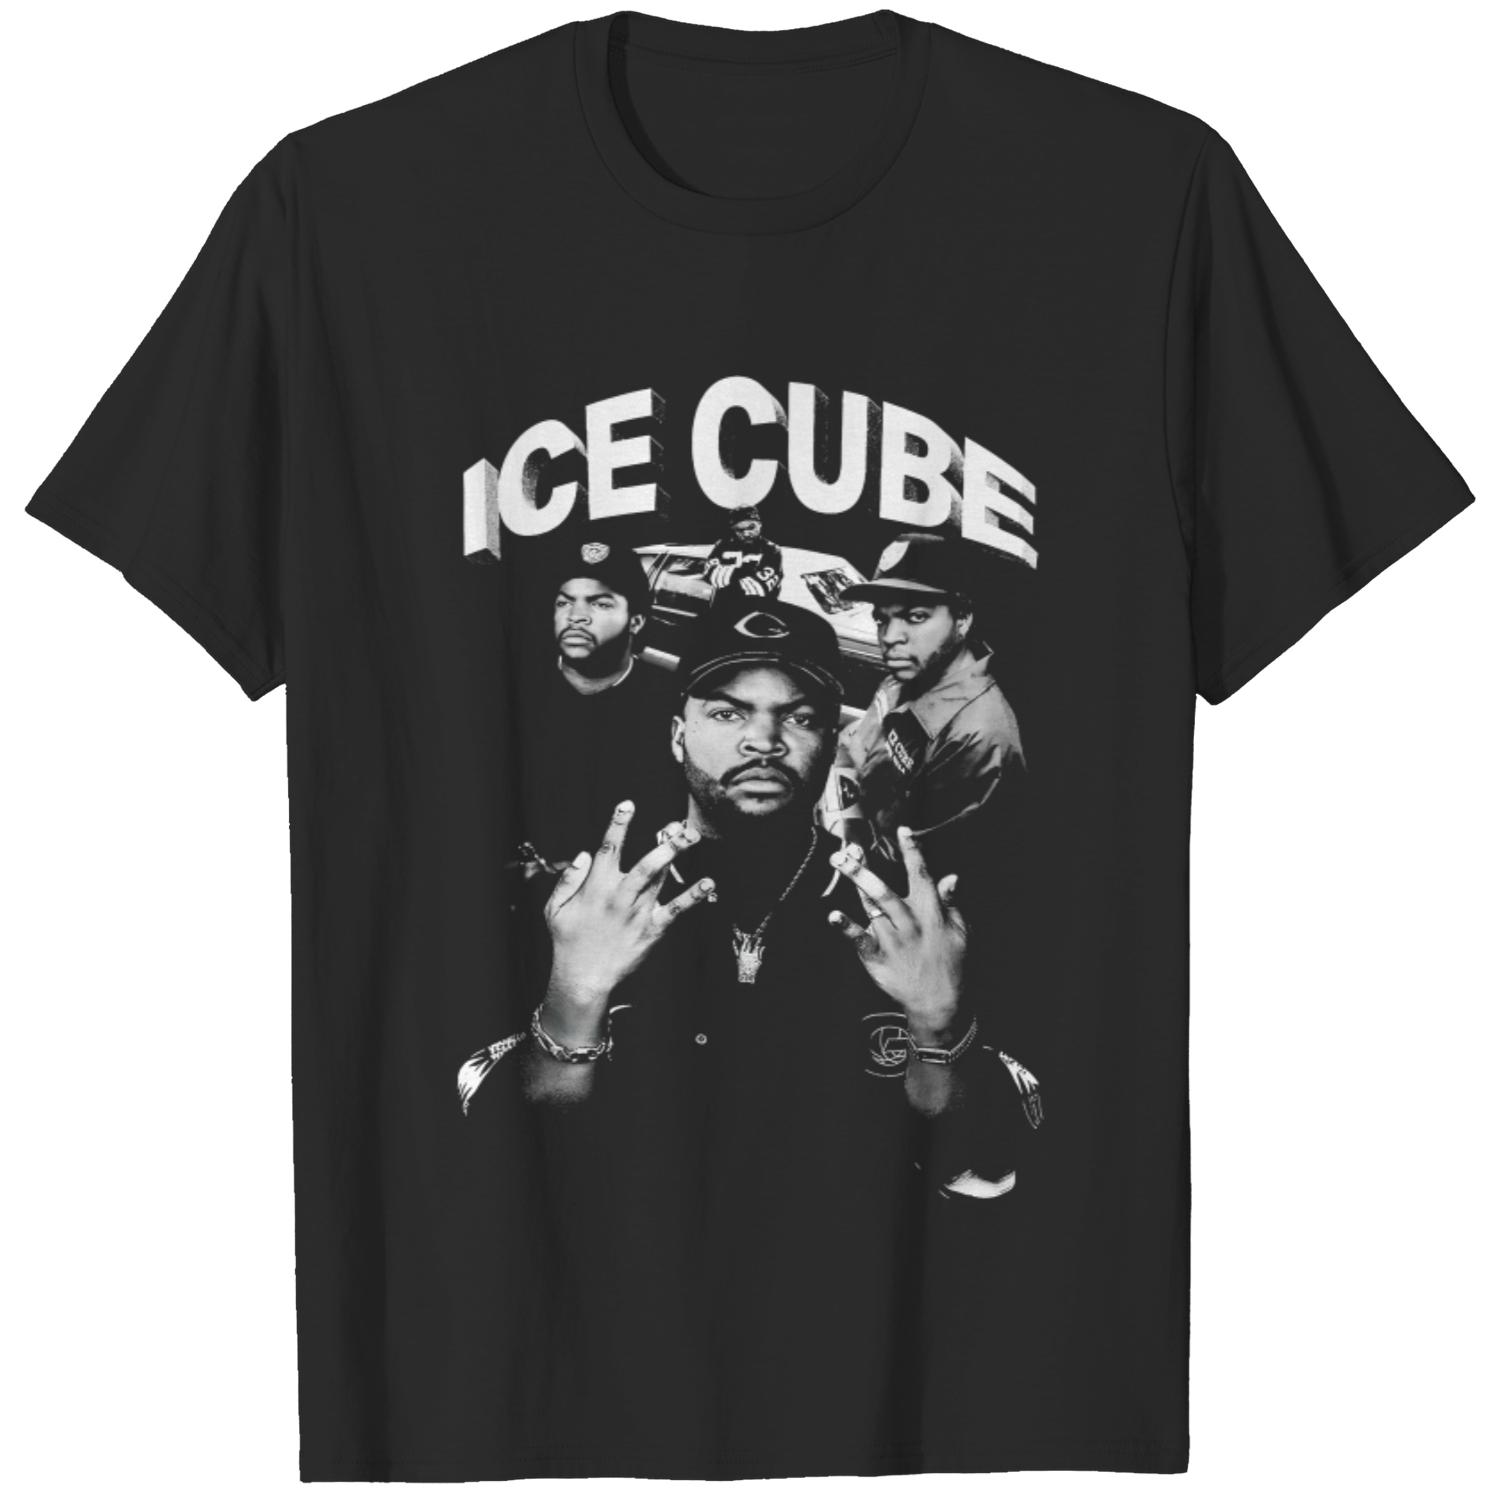 Retro 90s Ice Cube Rapper Tee, Vintage Ice Cube Shirt, Vintage Hip Hop Tee,  Vintage Bootleg